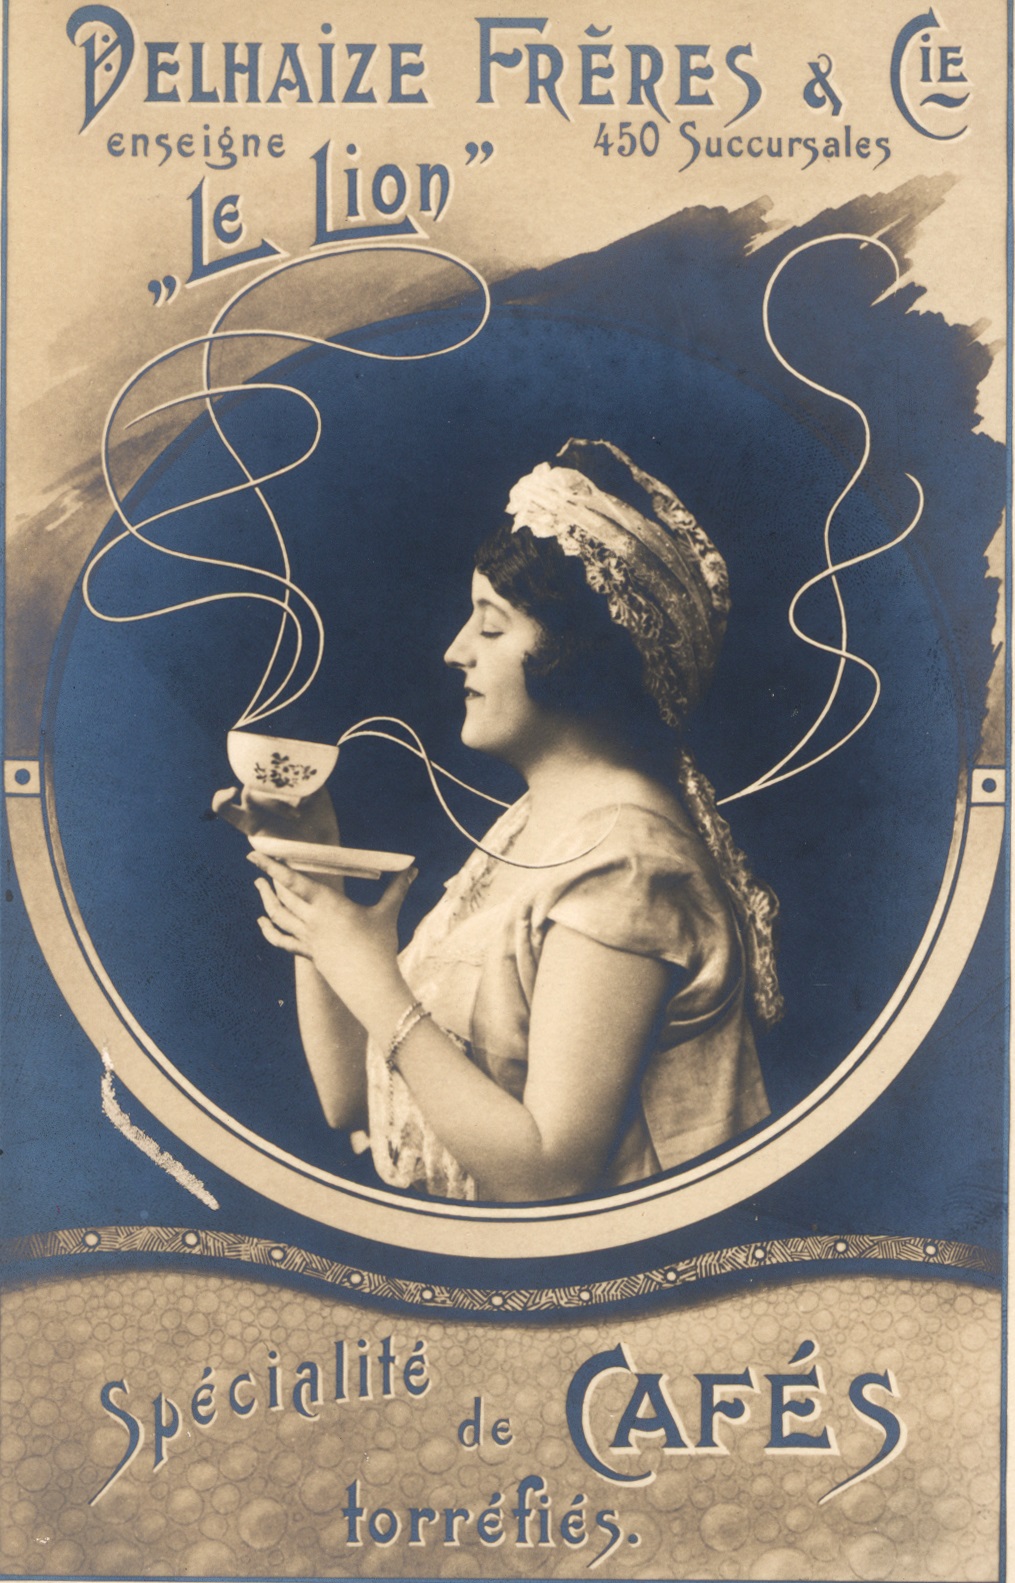 Affiche van koffie 'Le Lion' van Delhaize met een net uitgedoste dame, ca. 1890 - 1915. Collectie Delhaize, Brussel.